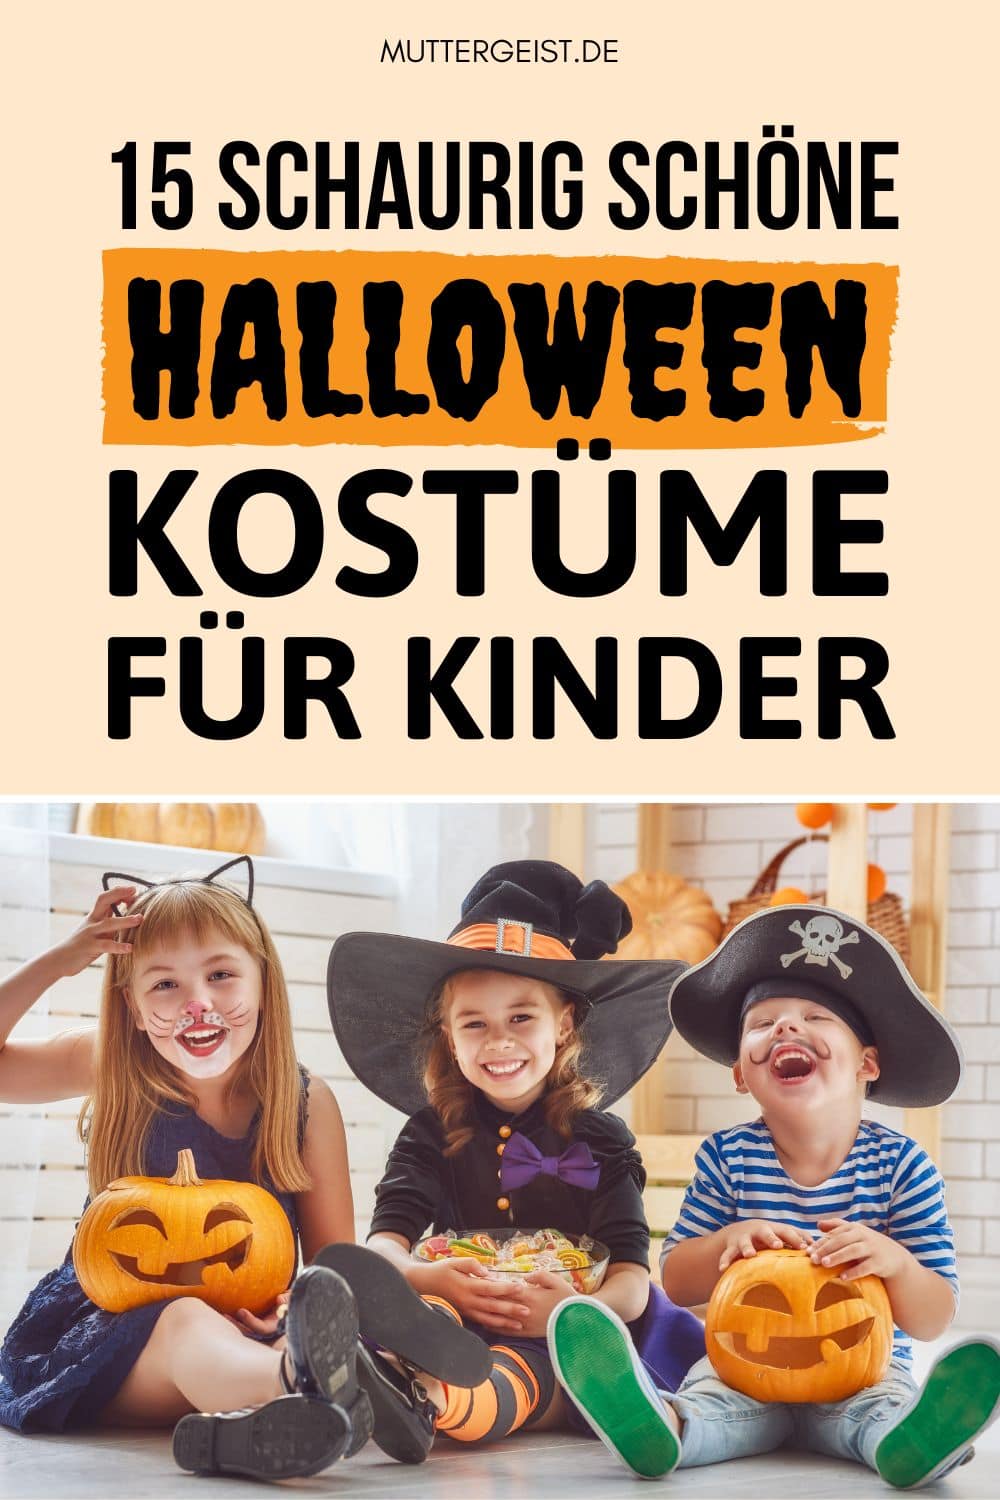 15 Schaurig schöne Halloween Kostüme für Kinder Pinterest